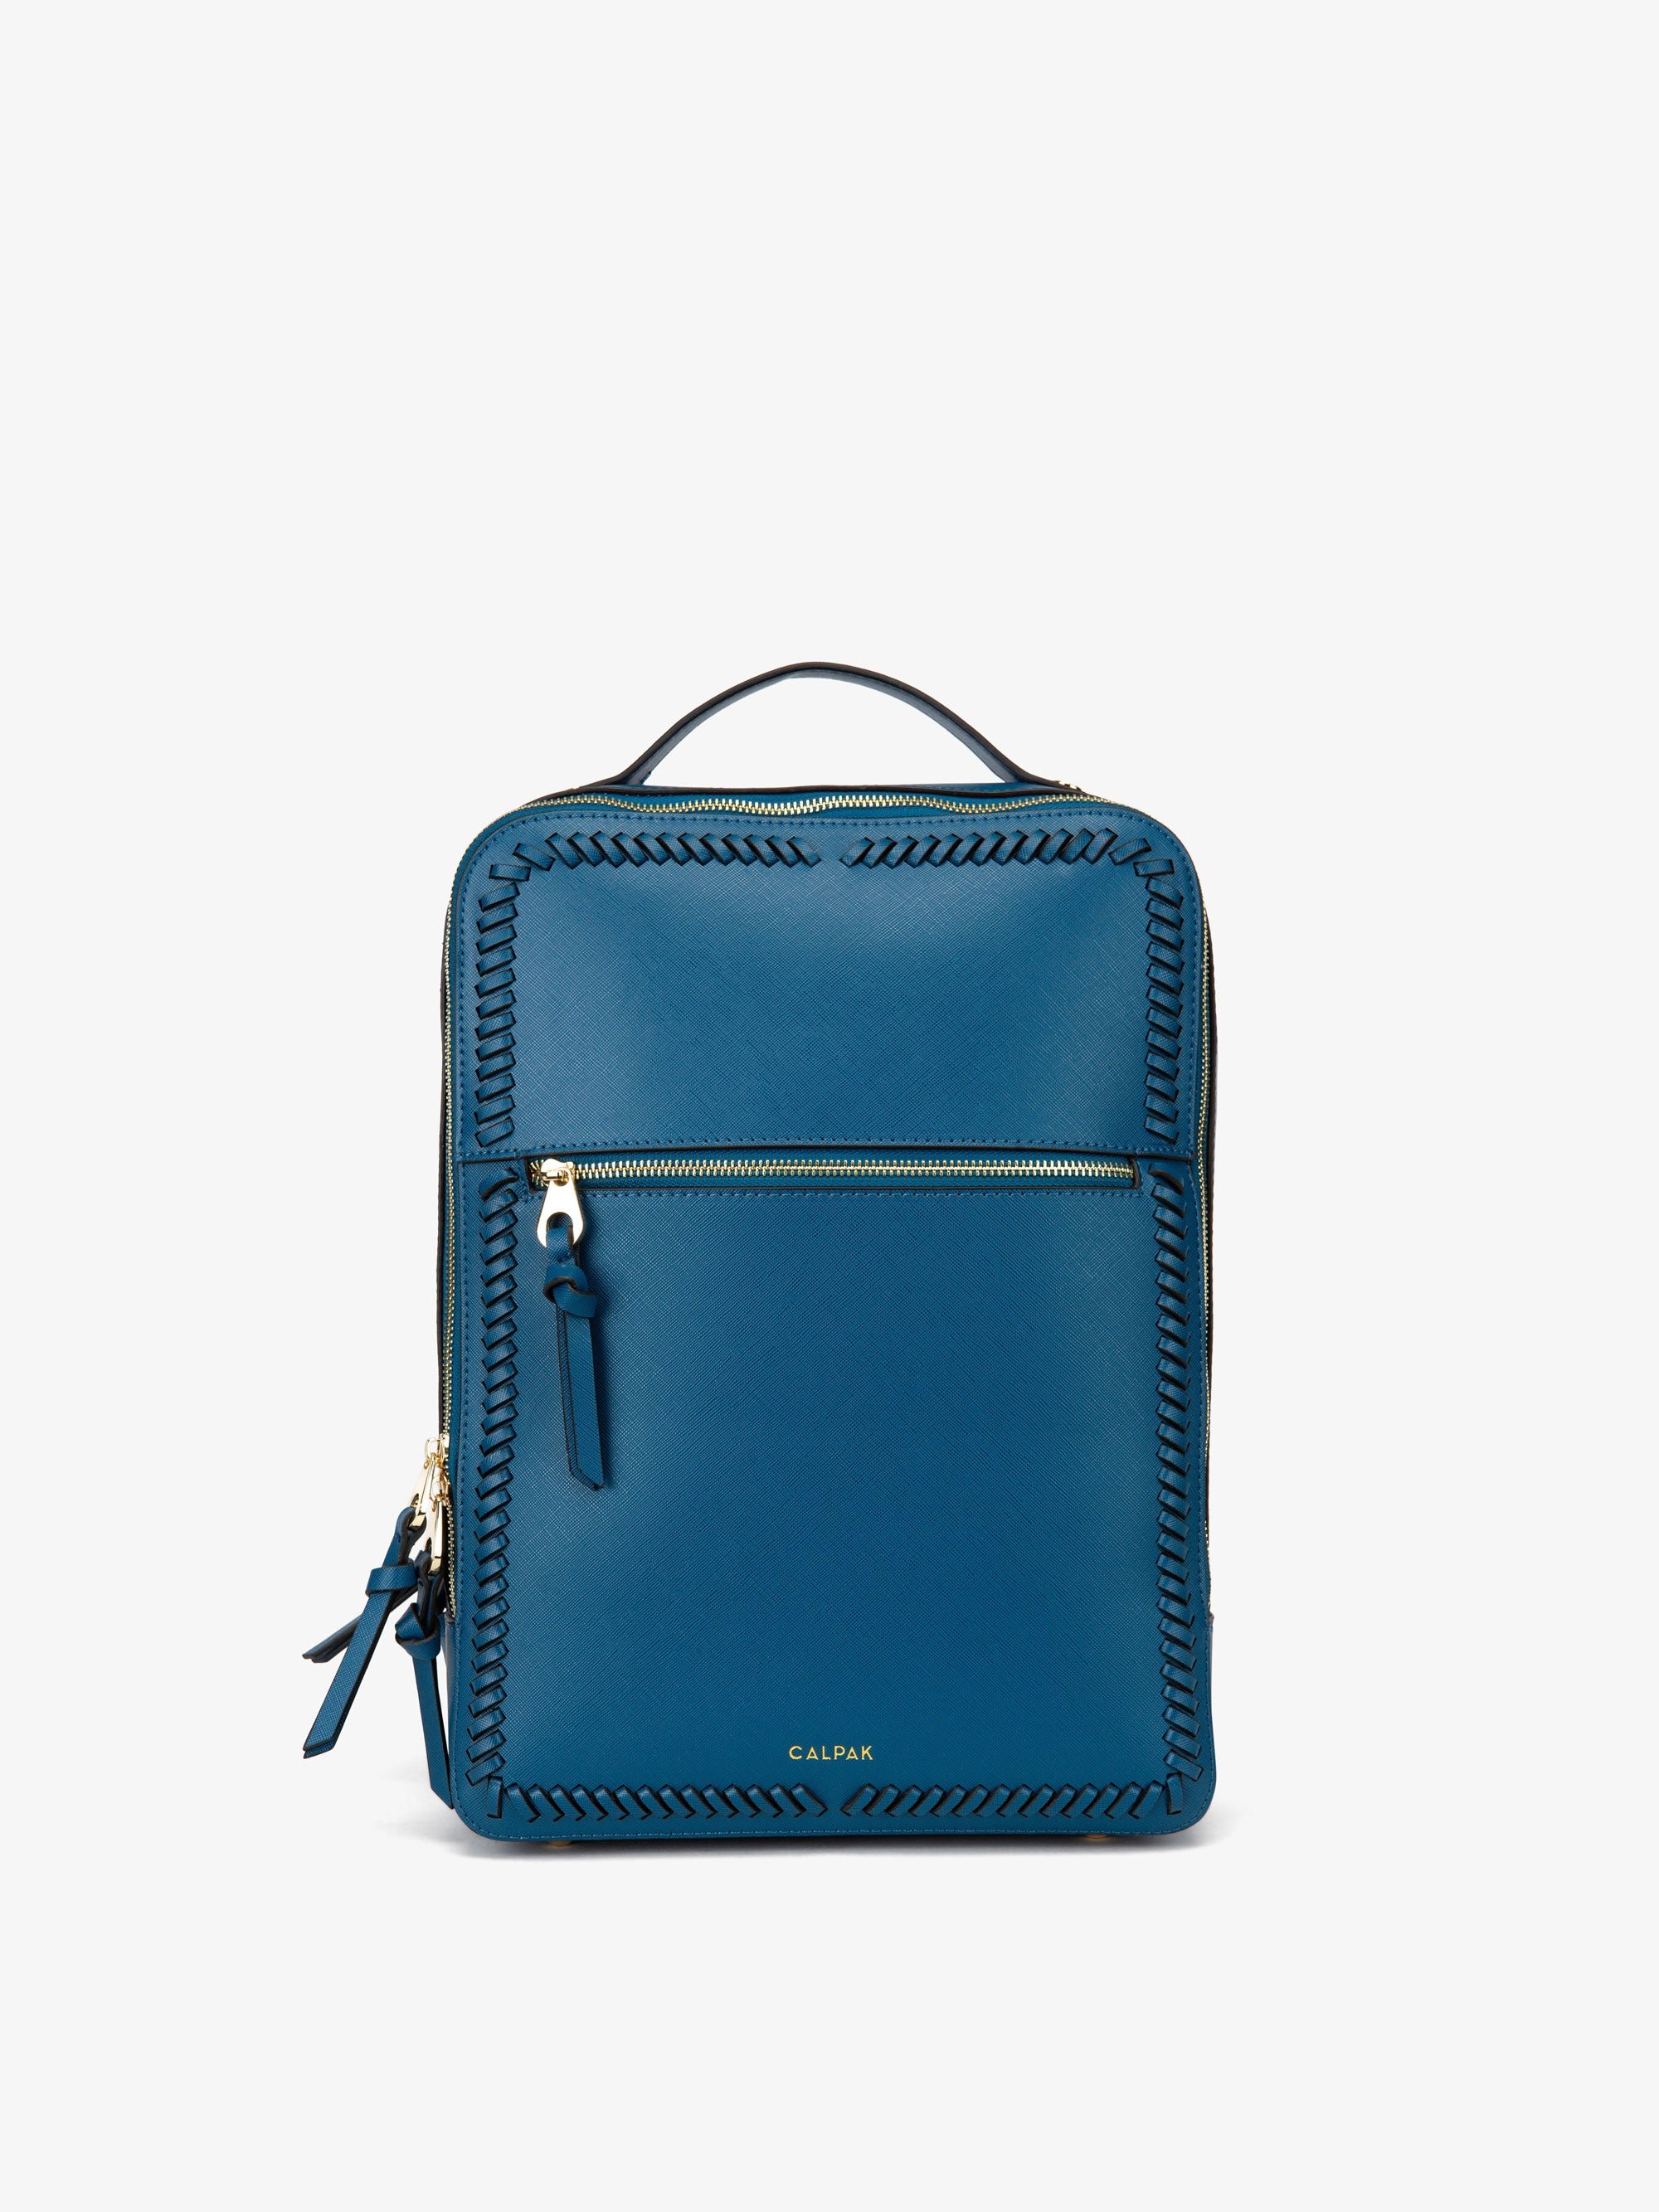 CALPAK Kaya Laptop Backpack for women in dark blue